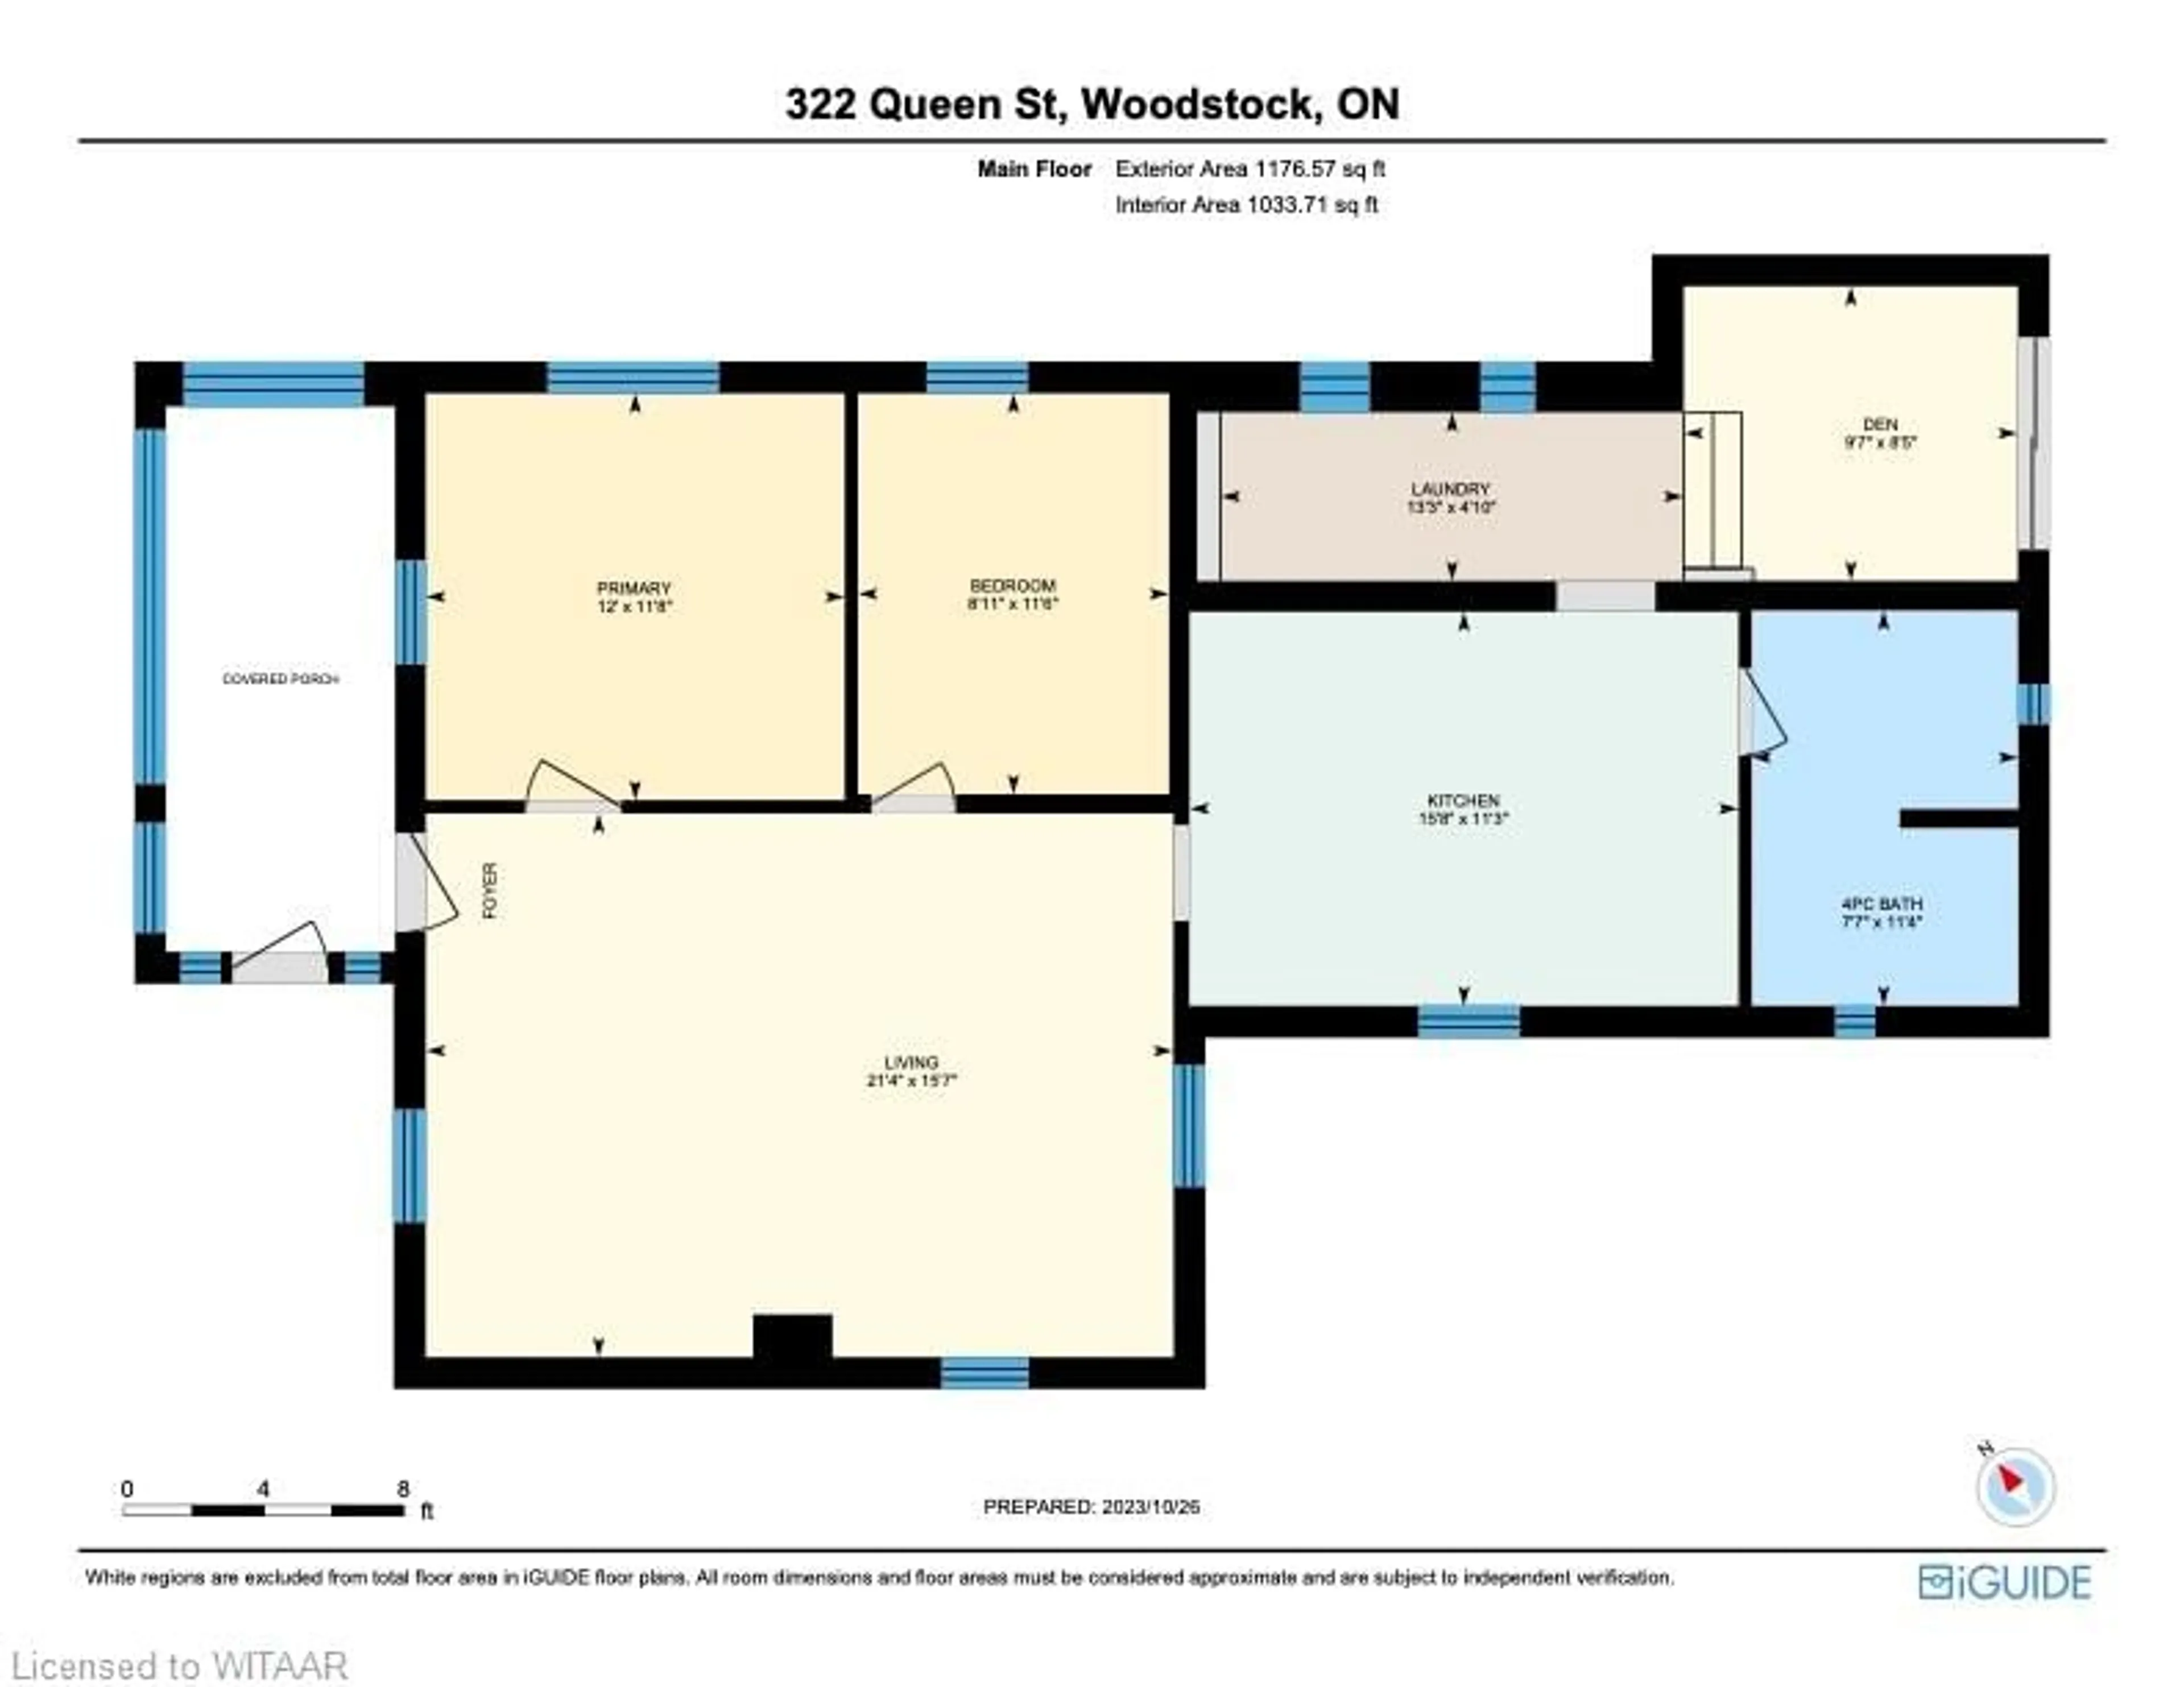 Floor plan for 322 Queen St, Woodstock Ontario N4S 1M1